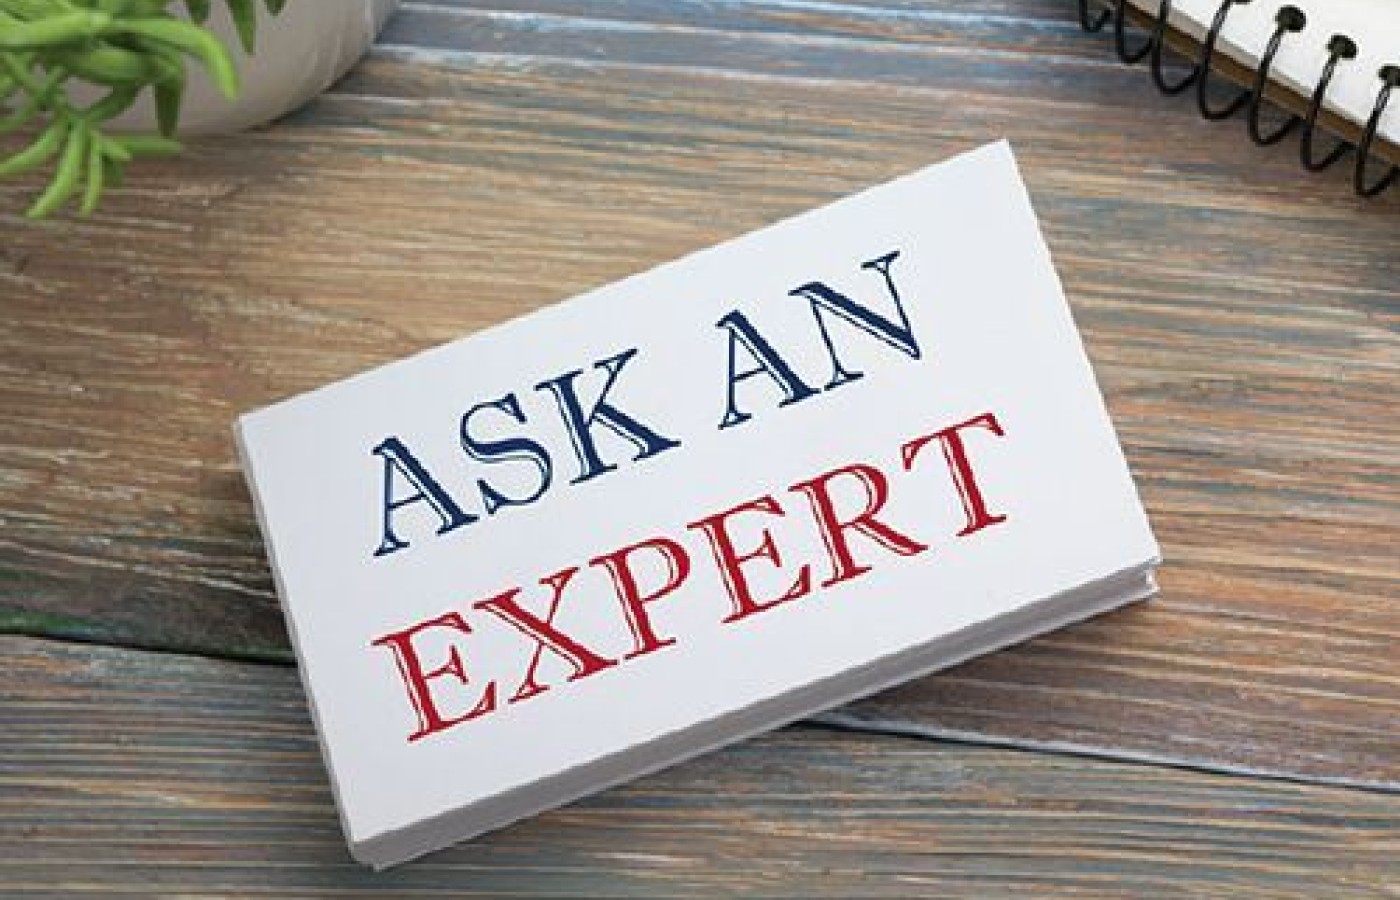 ask an expert